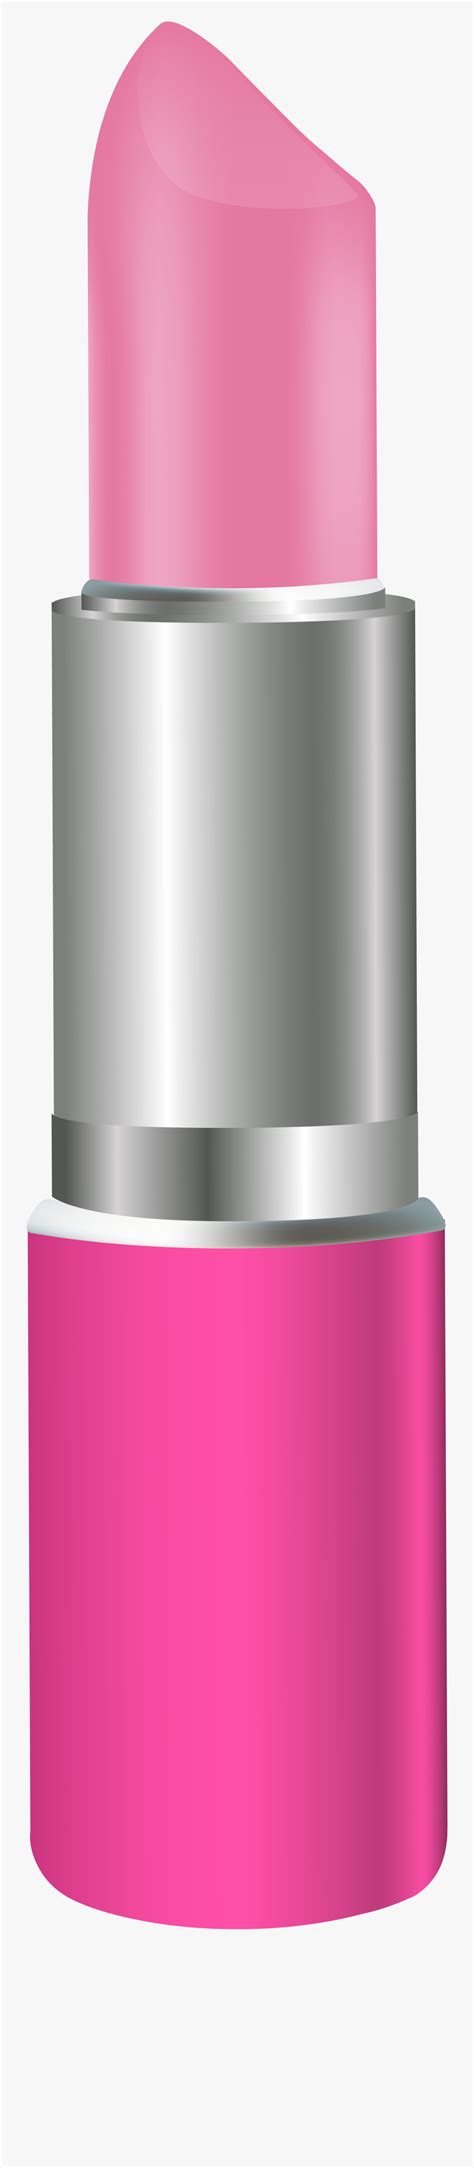 Pink Lipstick Clipart Clipart Best Clipart Best Images